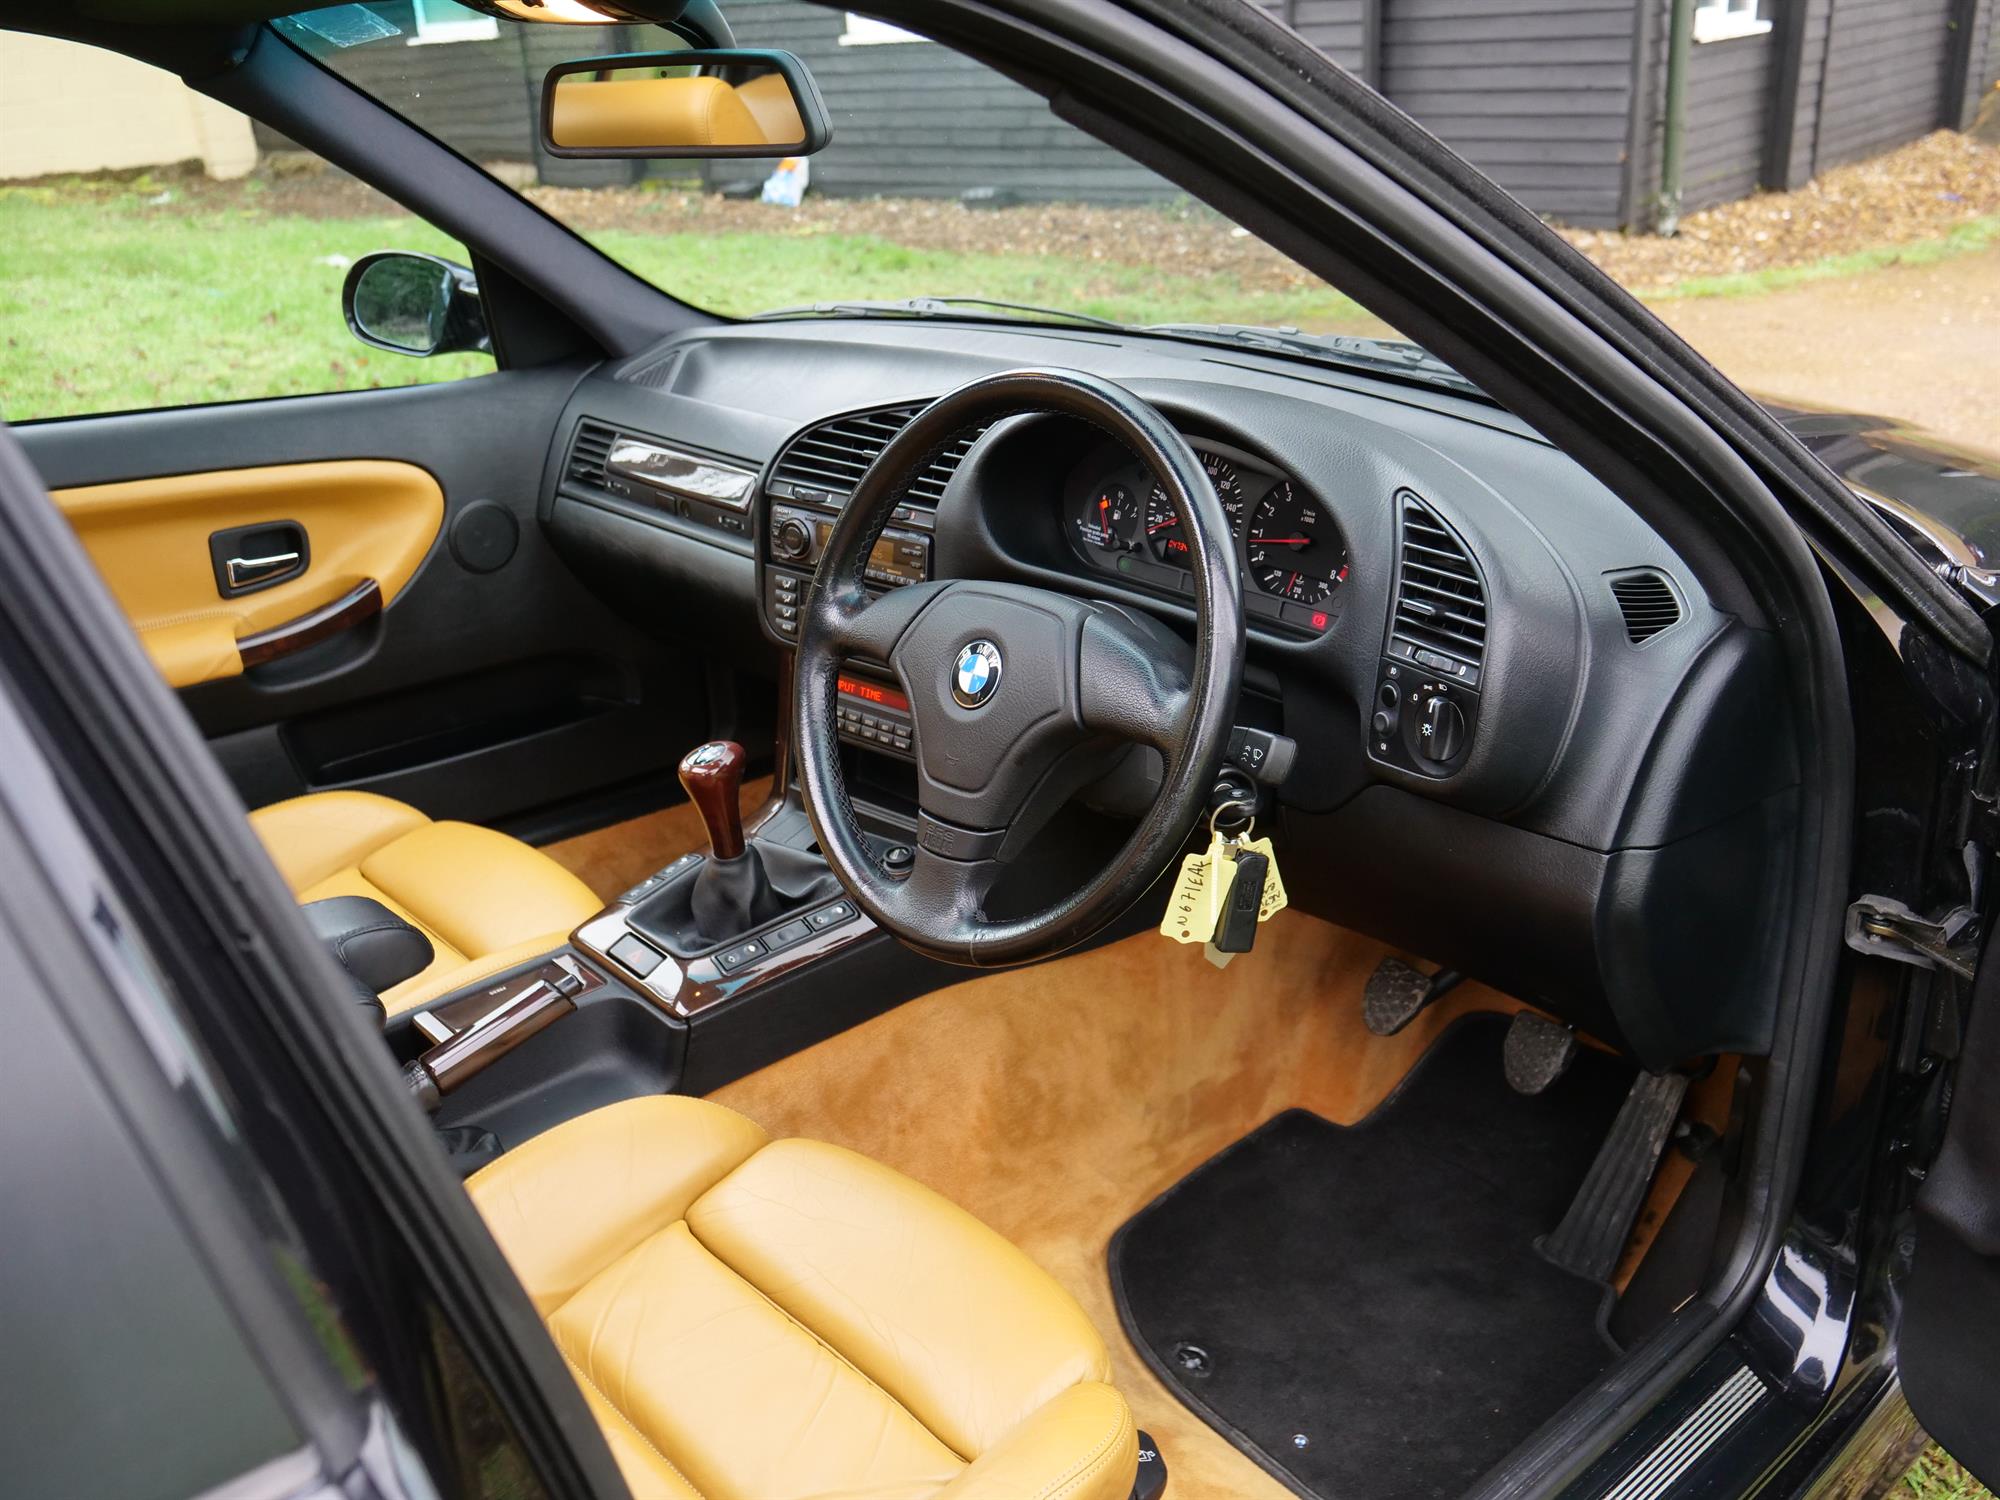 1996 BMW M3 Evolution (E36) - Image 14 of 18